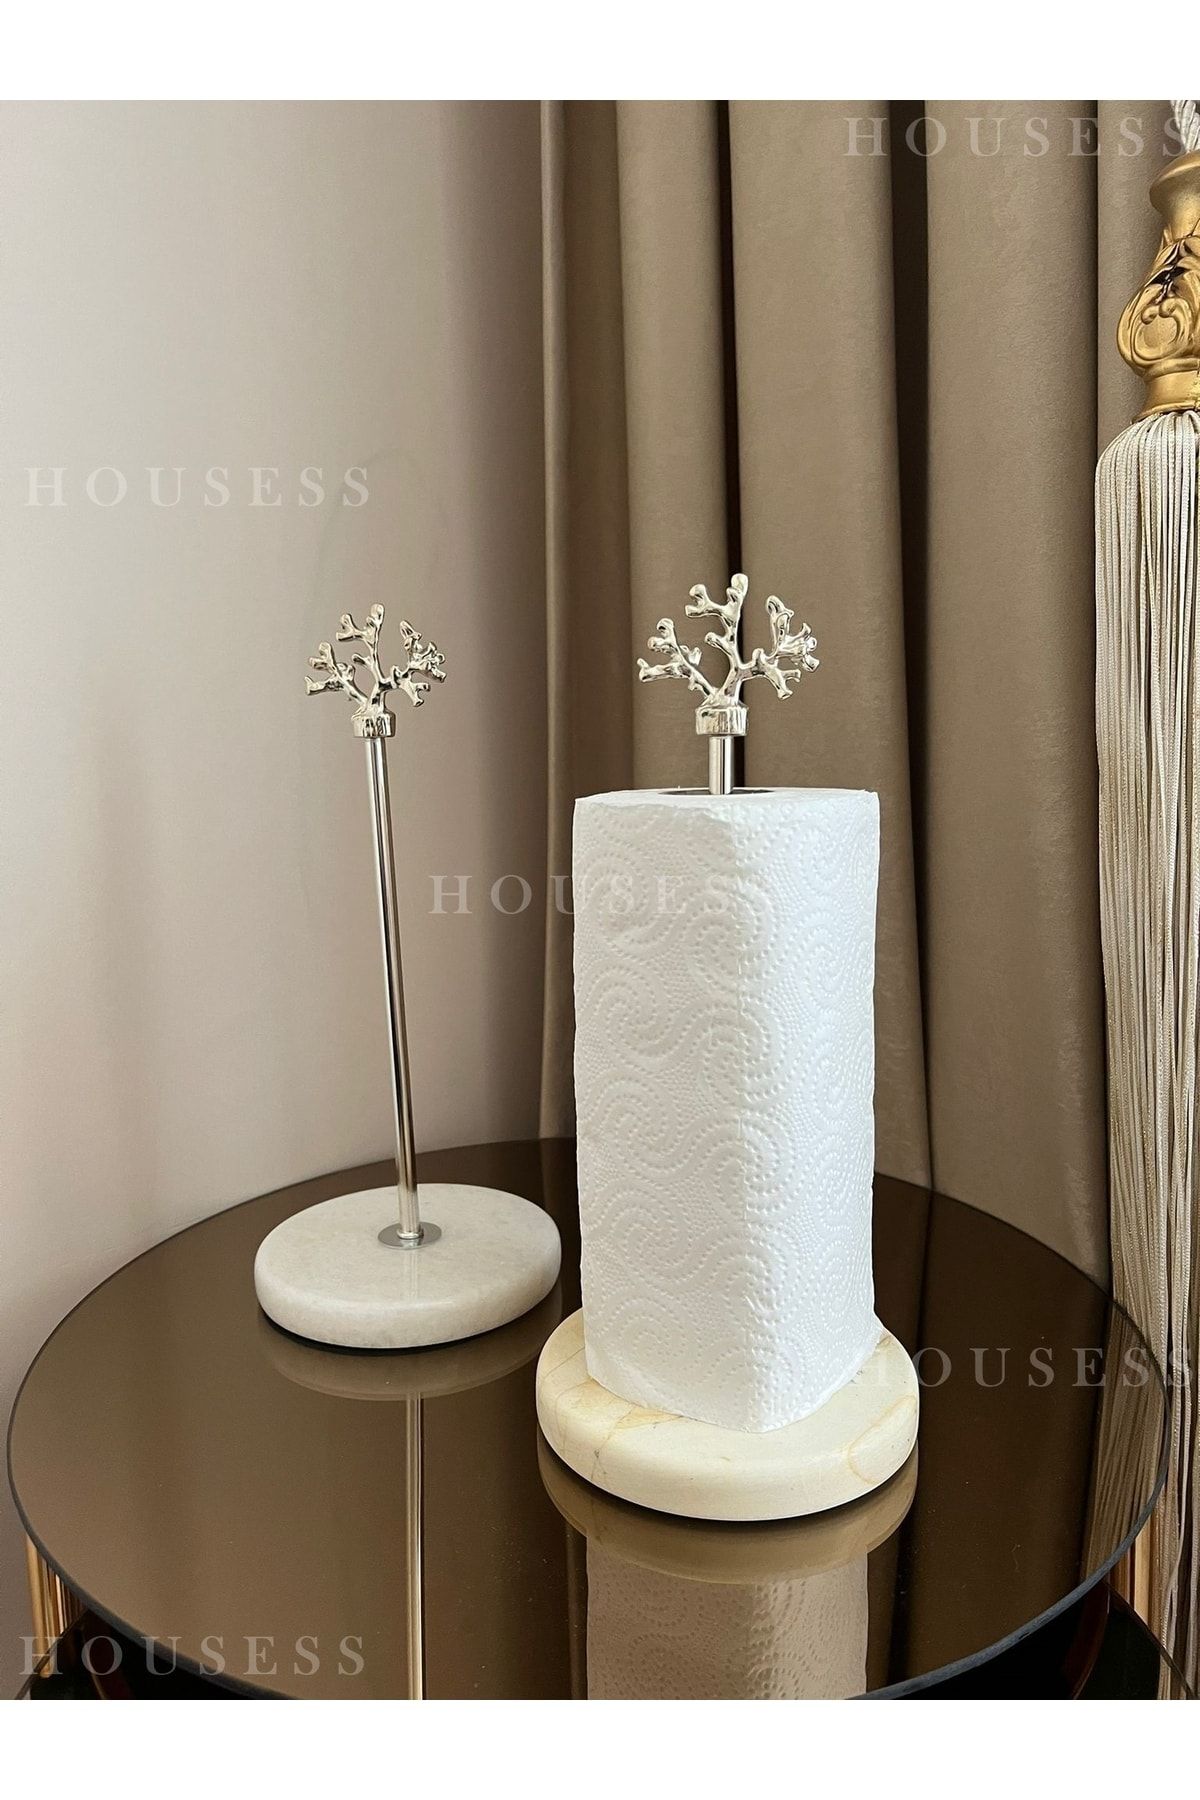 Housess Mermer Kağıt Havluluk Dekoratif Mercan Işlemeli Peçetelik